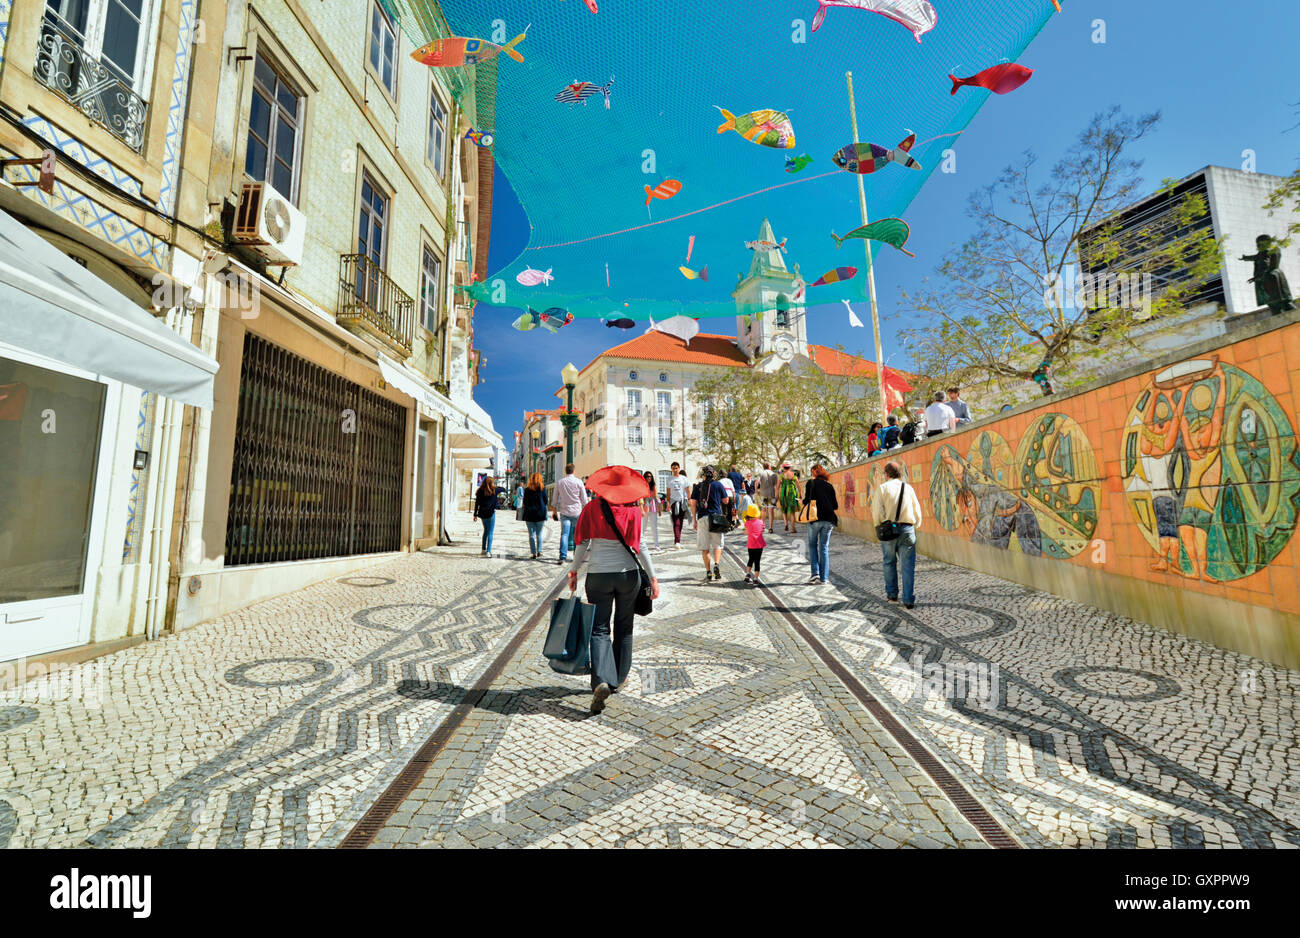 Portugal: Frau mit Einkaufstüten und rote Sommerhut dekorierten Kopfsteinpflaster Straße mit Fisch Kunst am Himmel entlang Stockfoto